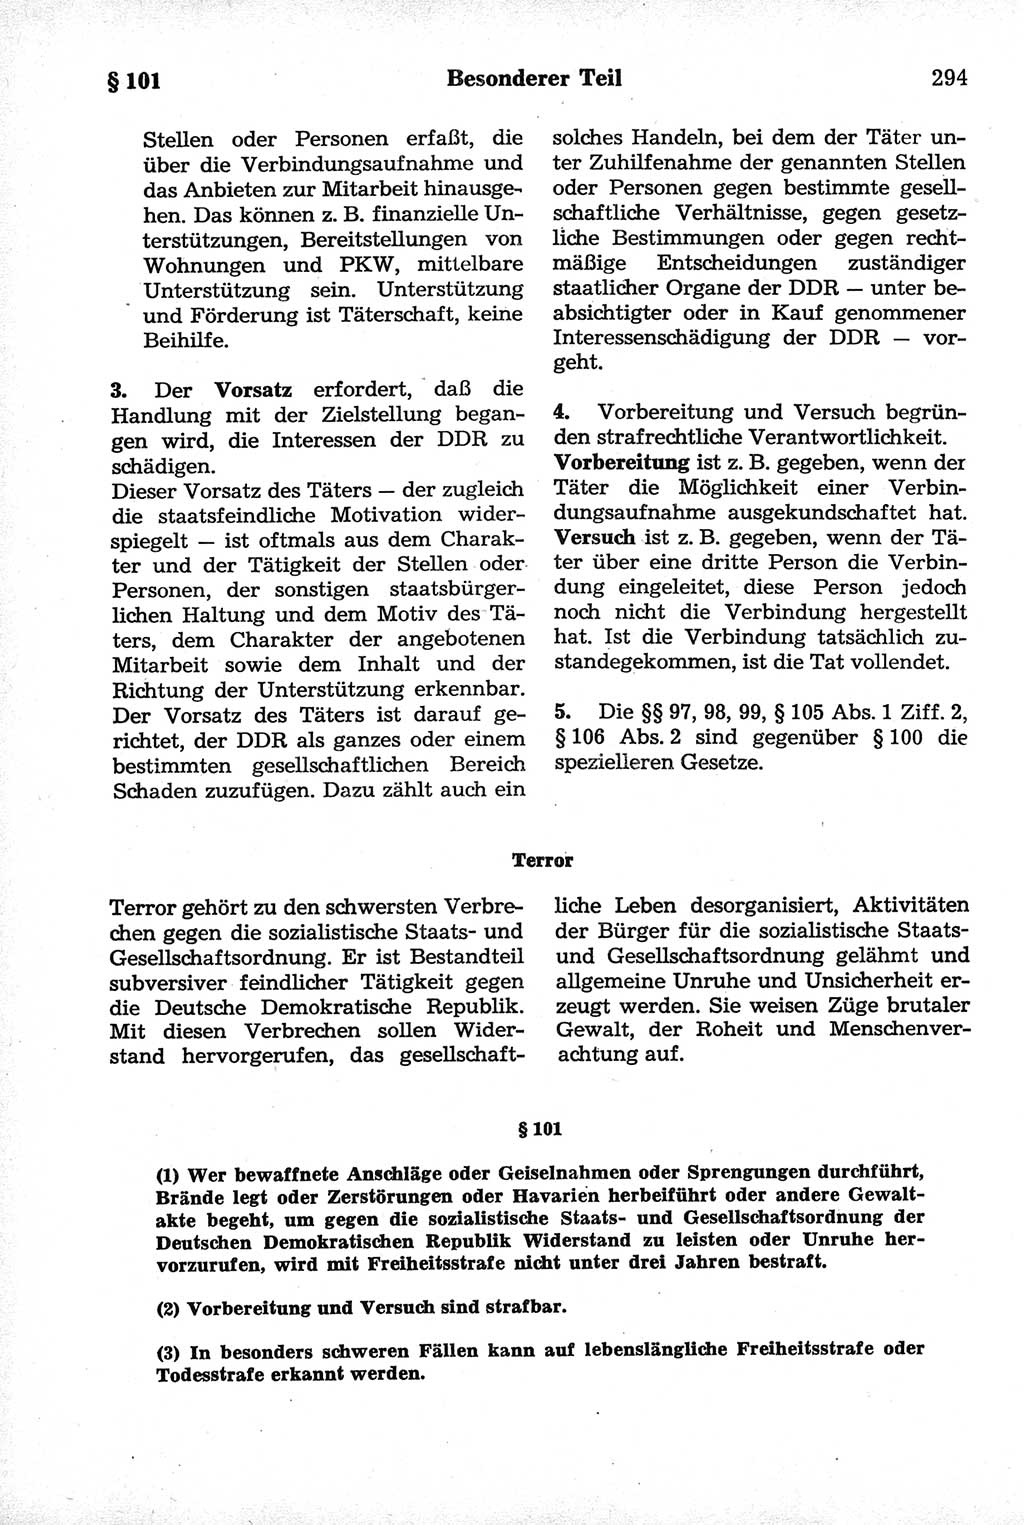 Strafrecht der Deutschen Demokratischen Republik (DDR), Kommentar zum Strafgesetzbuch (StGB) 1981, Seite 294 (Strafr. DDR Komm. StGB 1981, S. 294)